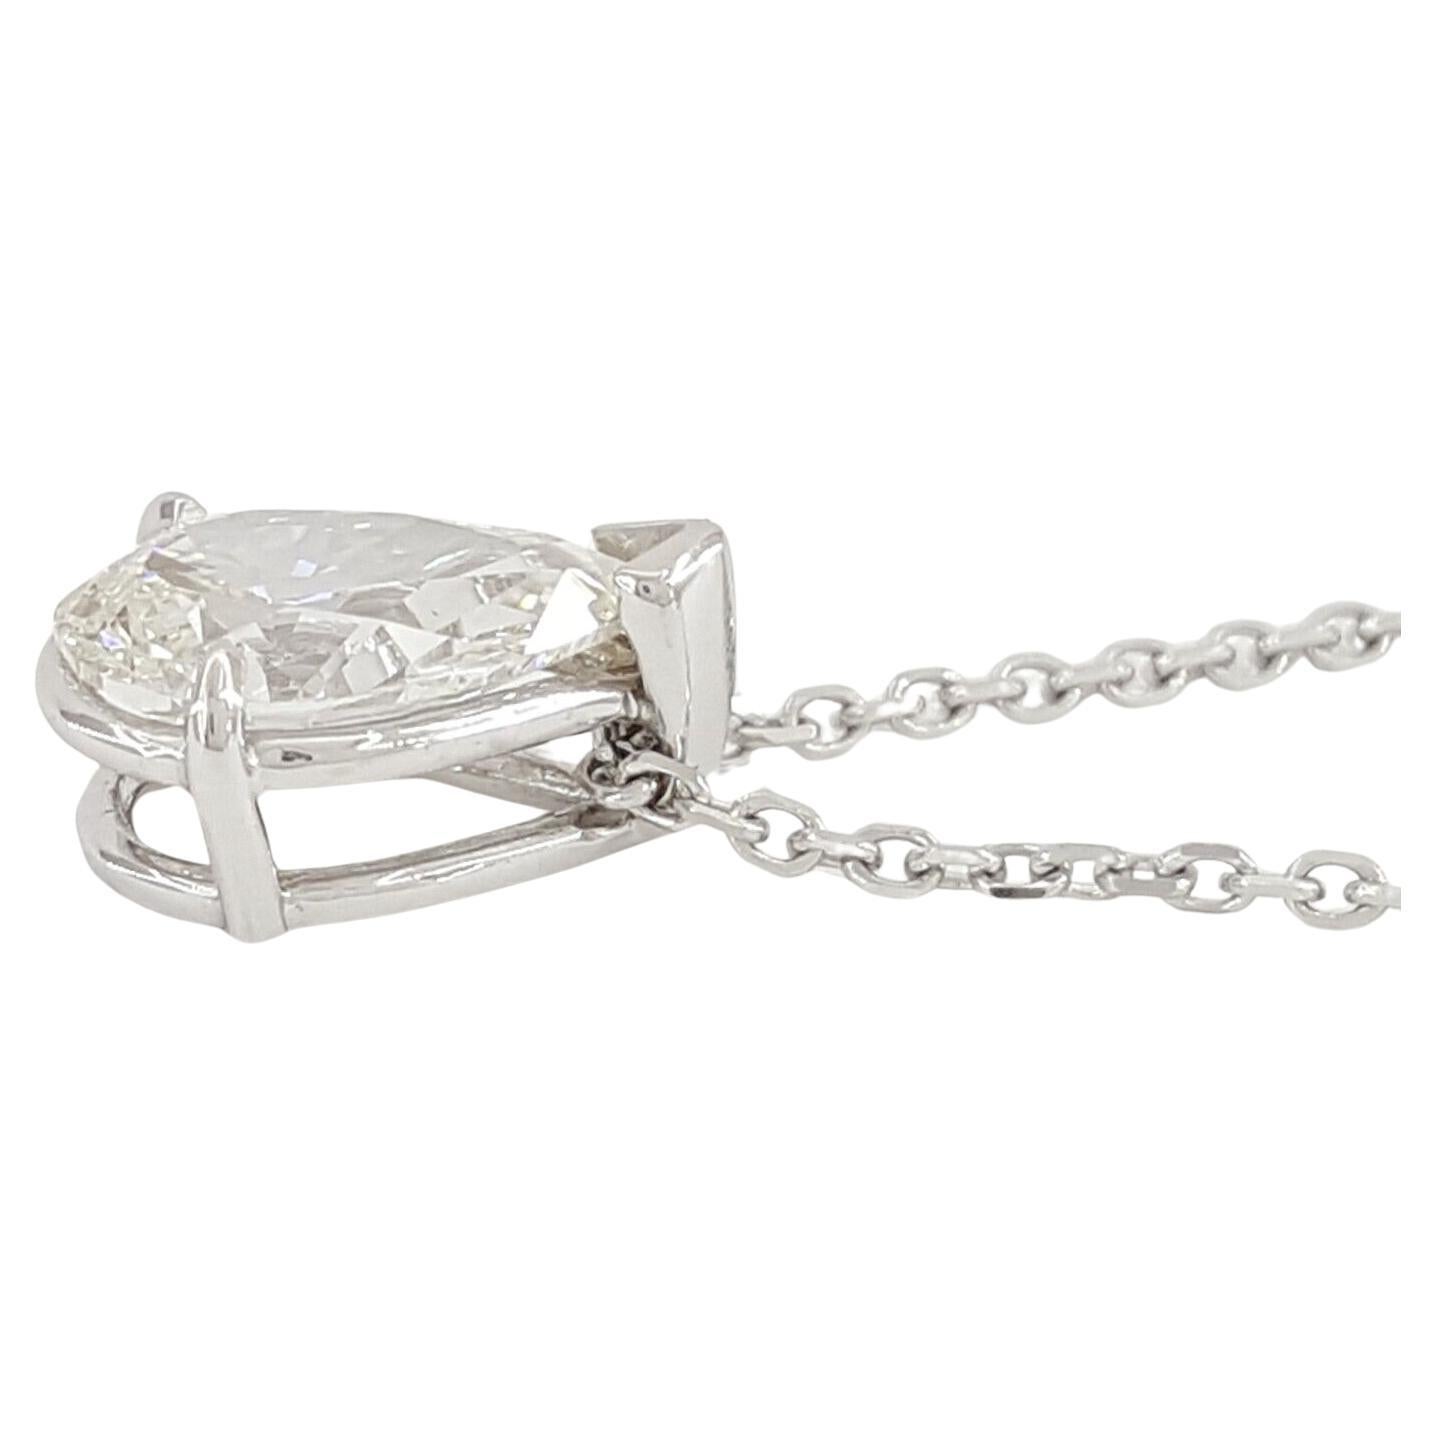 Erhöhen Sie Ihren Stil mit dieser exquisiten 1-Karat-Diamant-Solitär-Halskette im Birnen-Brillant-Schliff, einem zeitlosen Schmuckstück, das Eleganz und Raffinesse ausstrahlt. Diese verstellbare Halskette schmückt Ihr Dekolleté mit einem